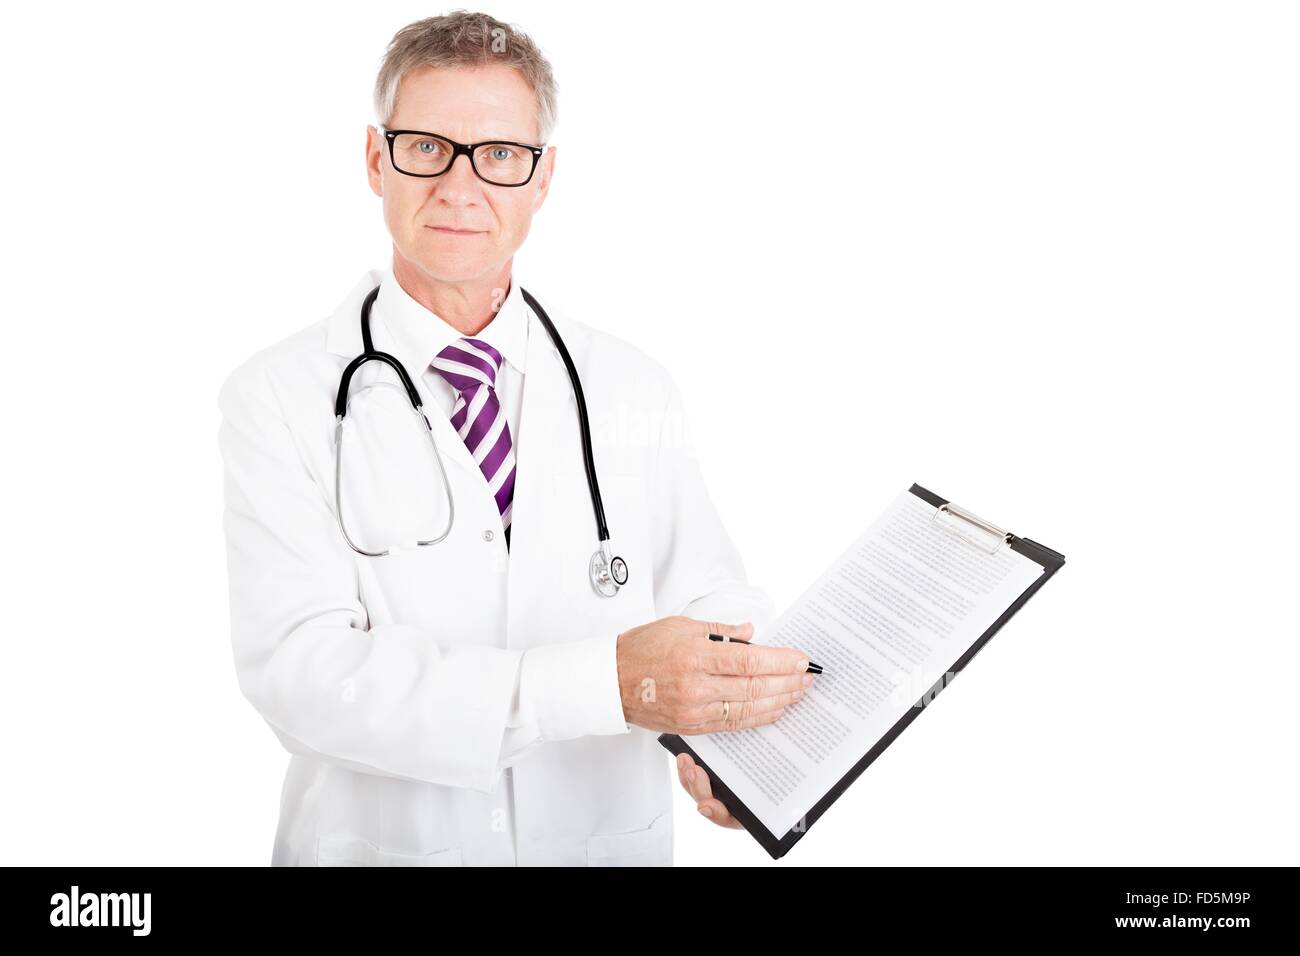 Professional zeigt medizinische Gesundheitsberichte während Looking in die Kamera, isolierte weißer Hintergrund Stockfoto